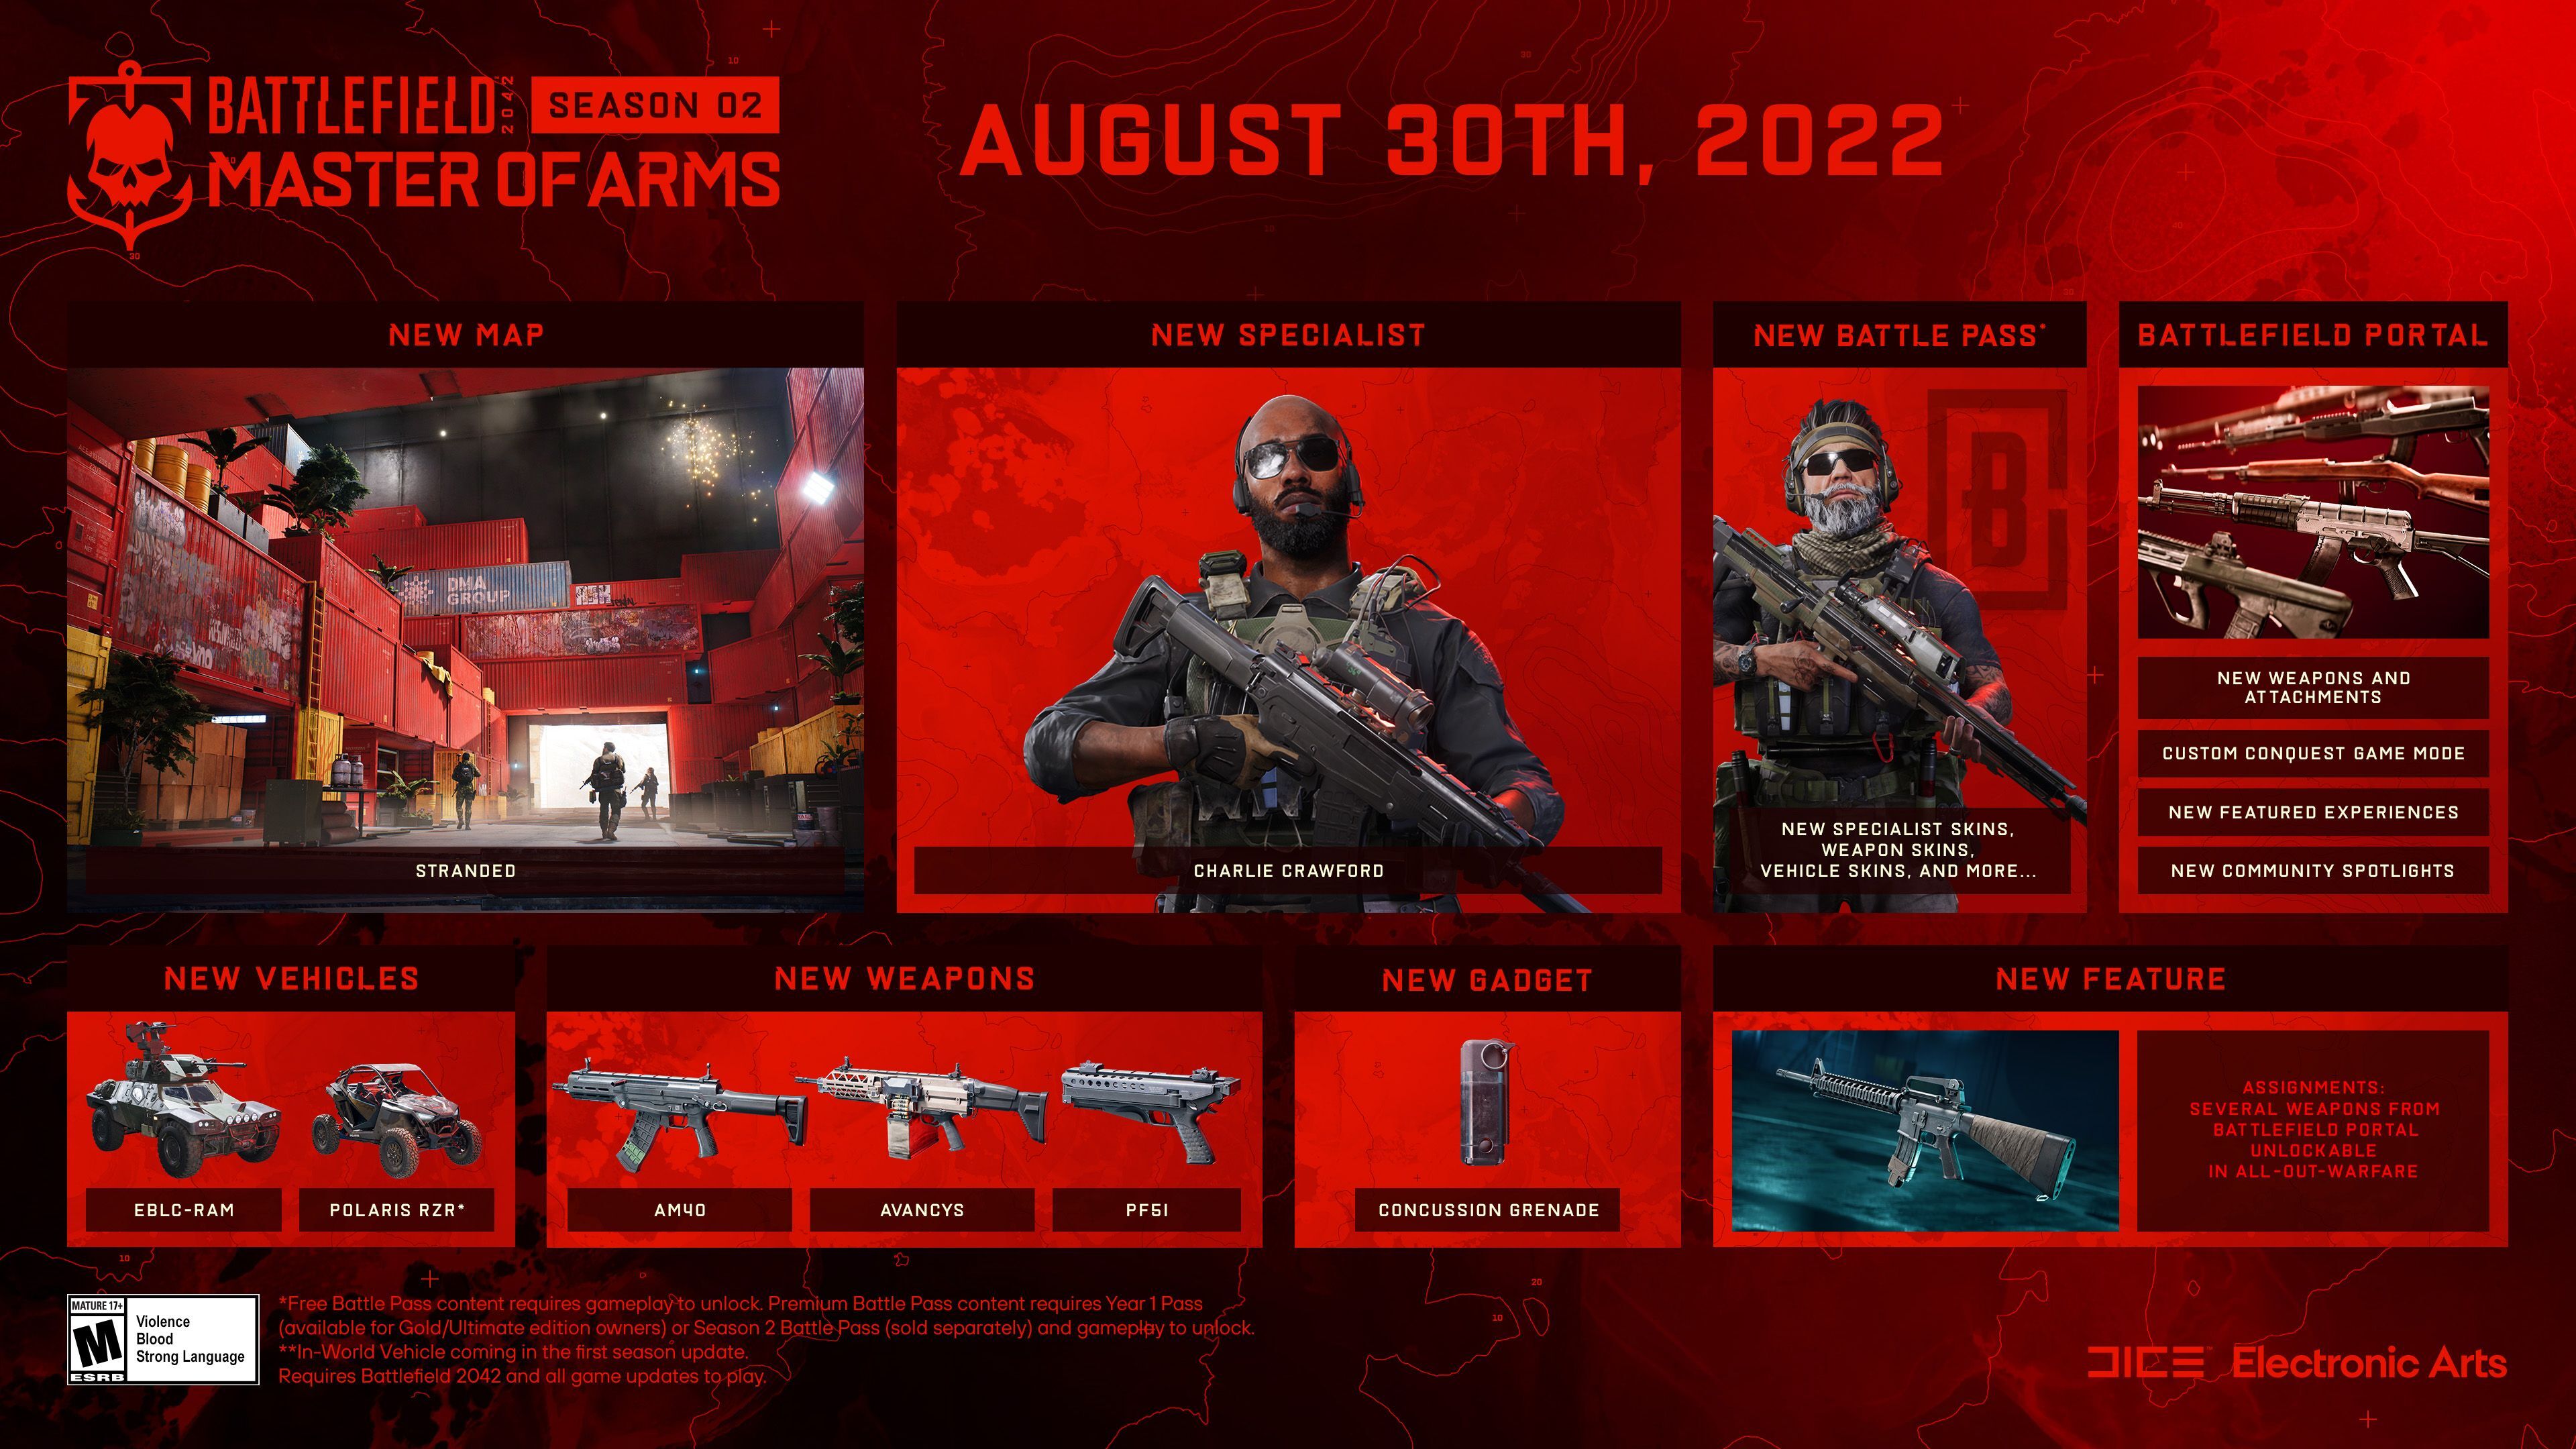 Battlefield 2042 release date